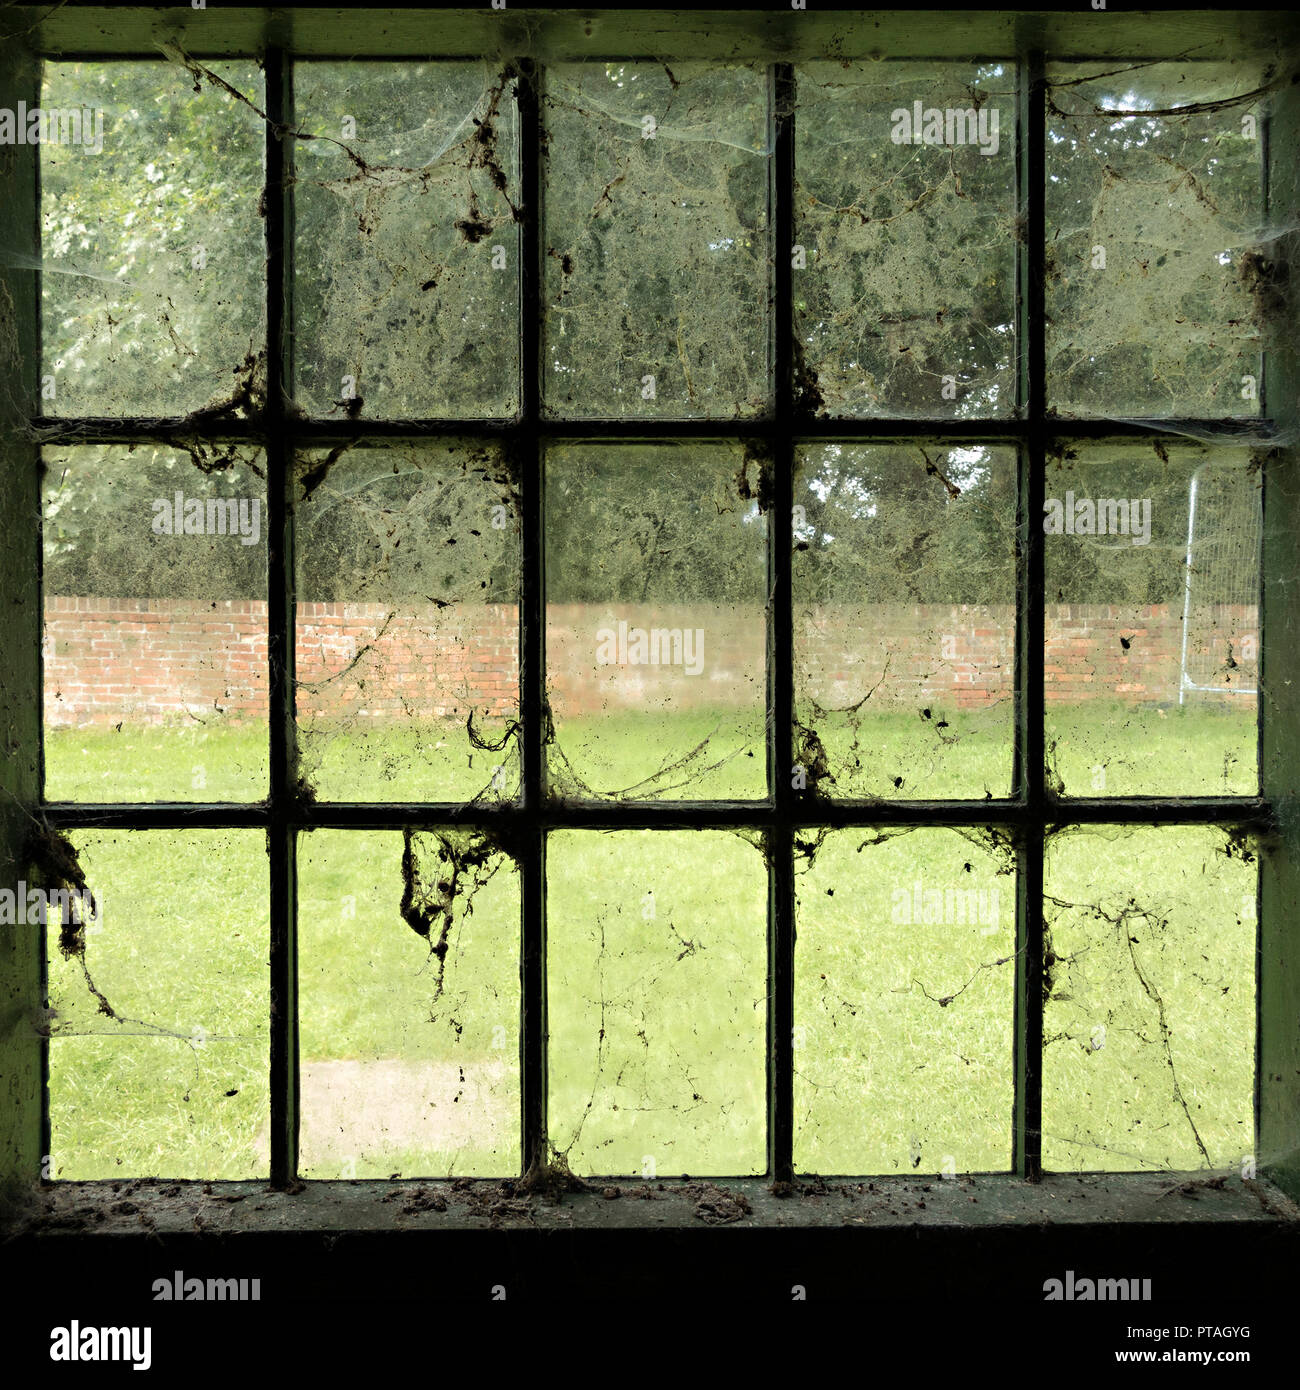 Schmutzige Fenster - alt, schmutzig, Glas Fensterscheiben in Spinnweben bedeckt, Spinnweben, Staub und Schmutz. Stockfoto